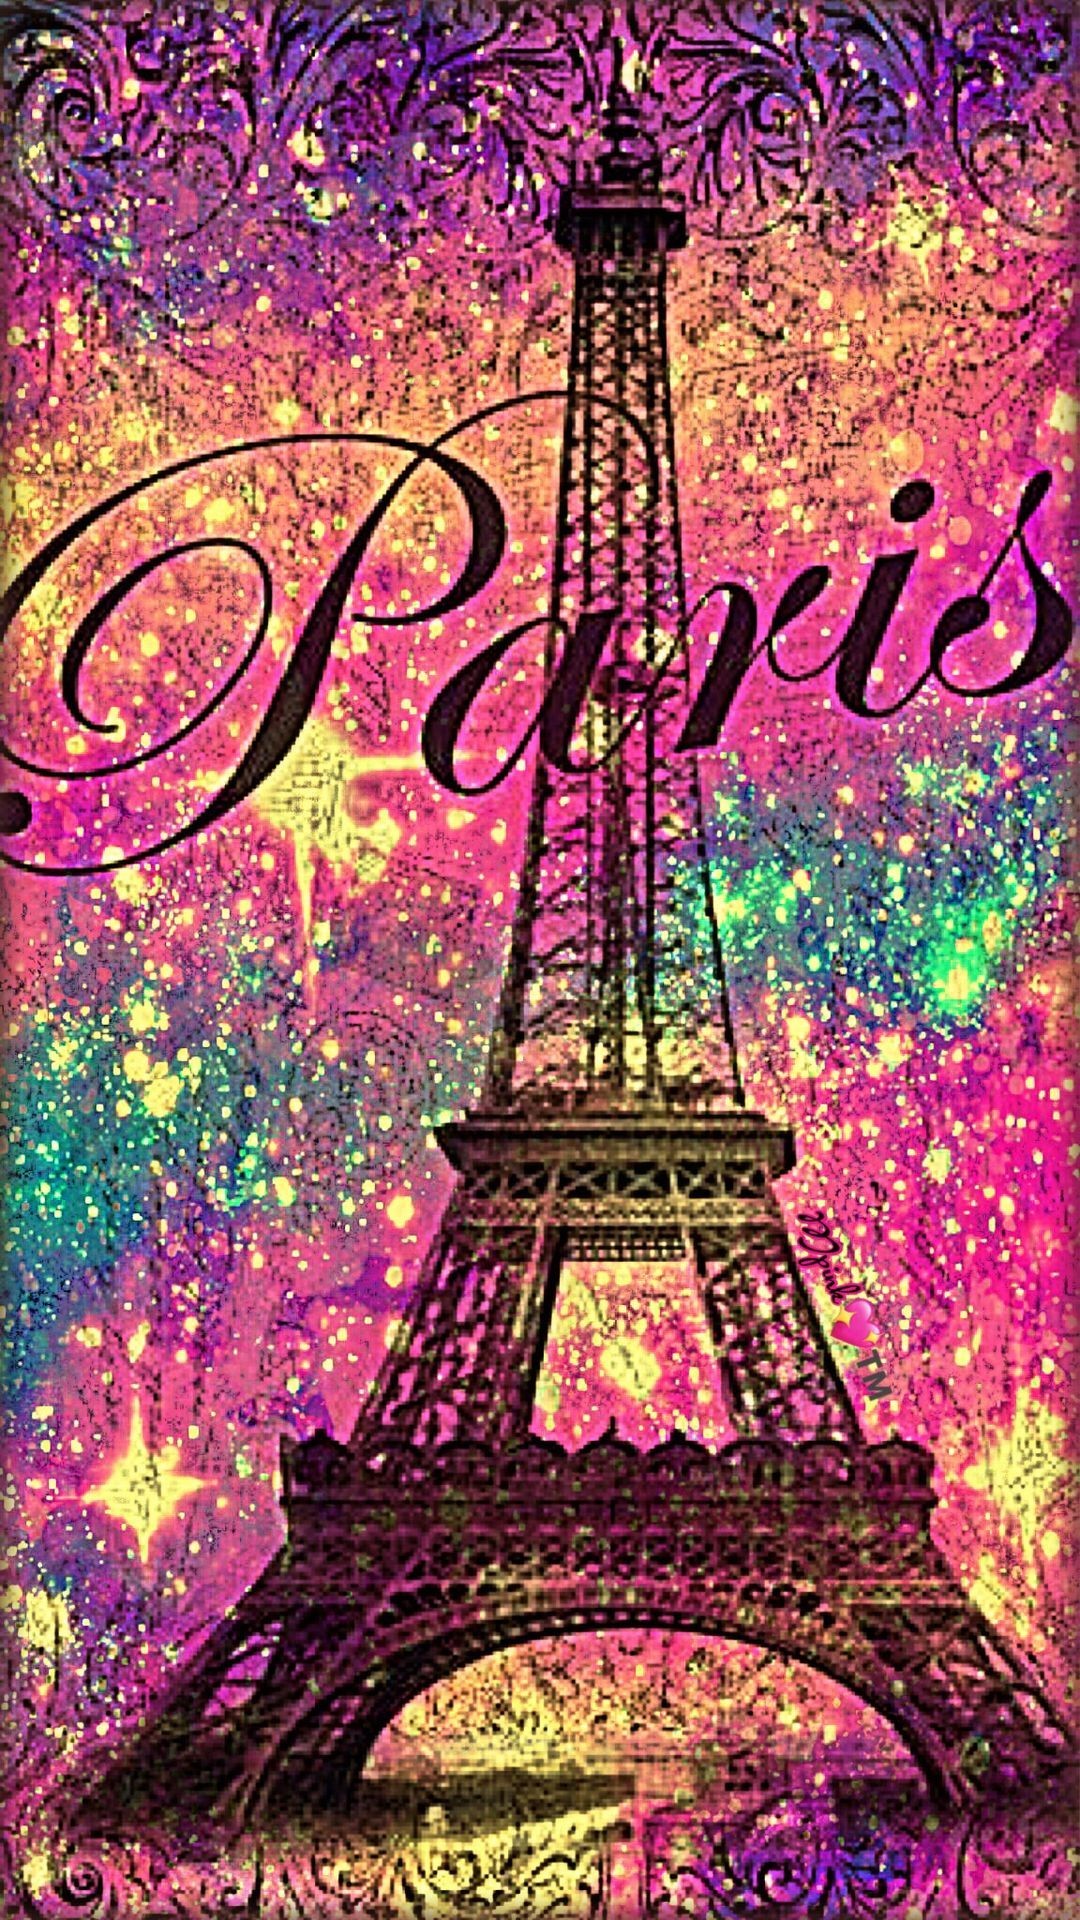 Girls Paris Stamp Collage Stripe Wallpaper Pink Brown Eiffel Tower Textured  | eBay